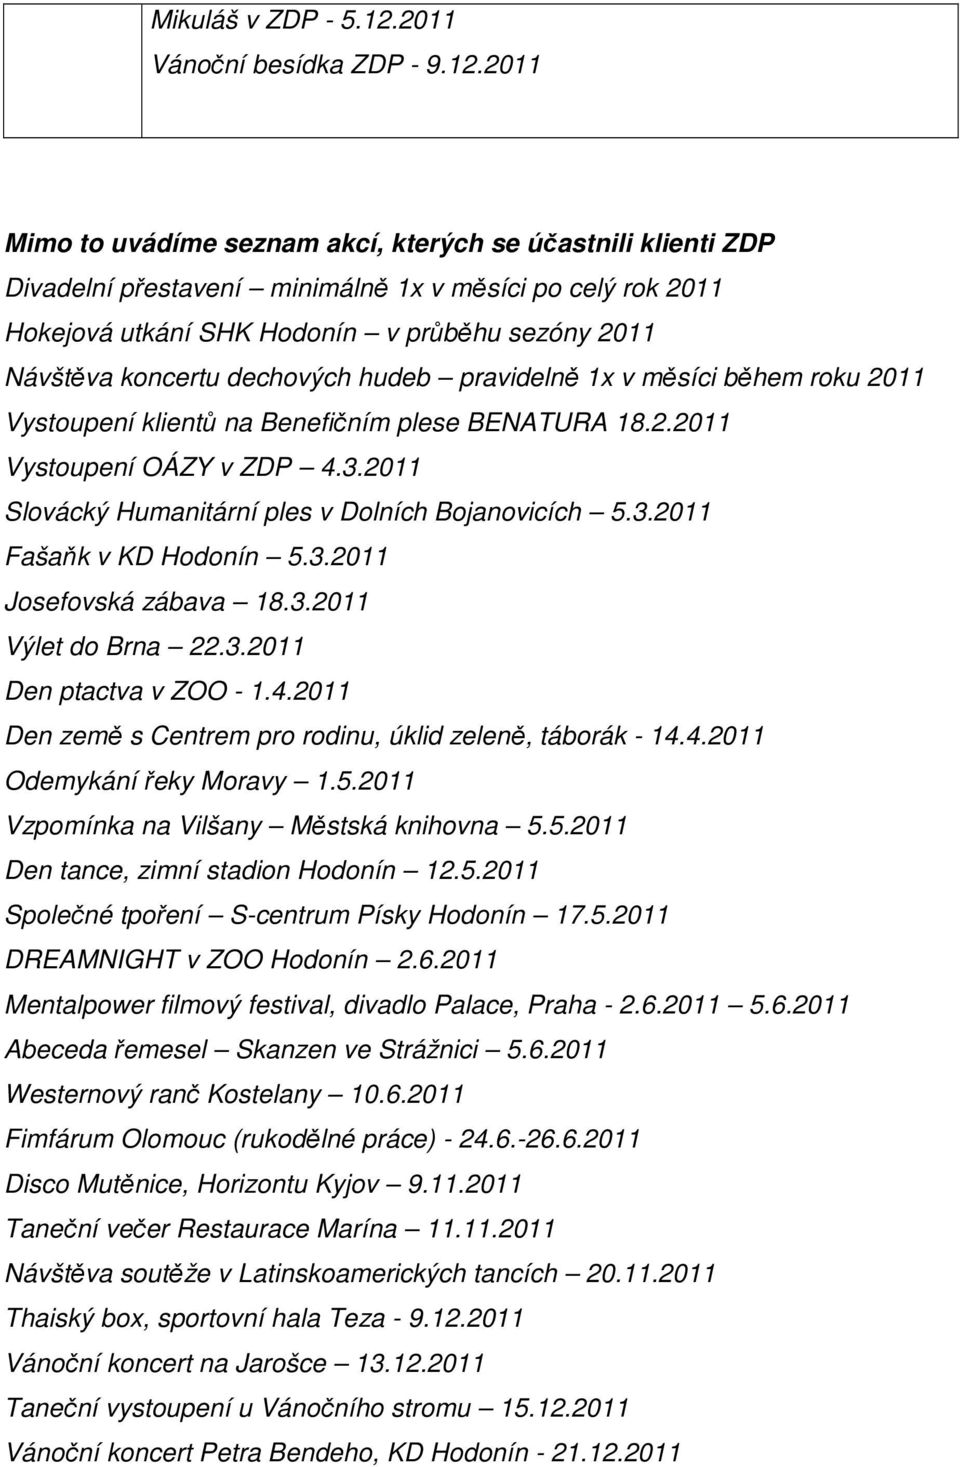 2011 Mimo to uvádíme seznam akcí, kterých se účastnili klienti ZDP Divadelní přestavení minimálně 1x v měsíci po celý rok 2011 Hokejová utkání SHK Hodonín v průběhu sezóny 2011 Návštěva koncertu